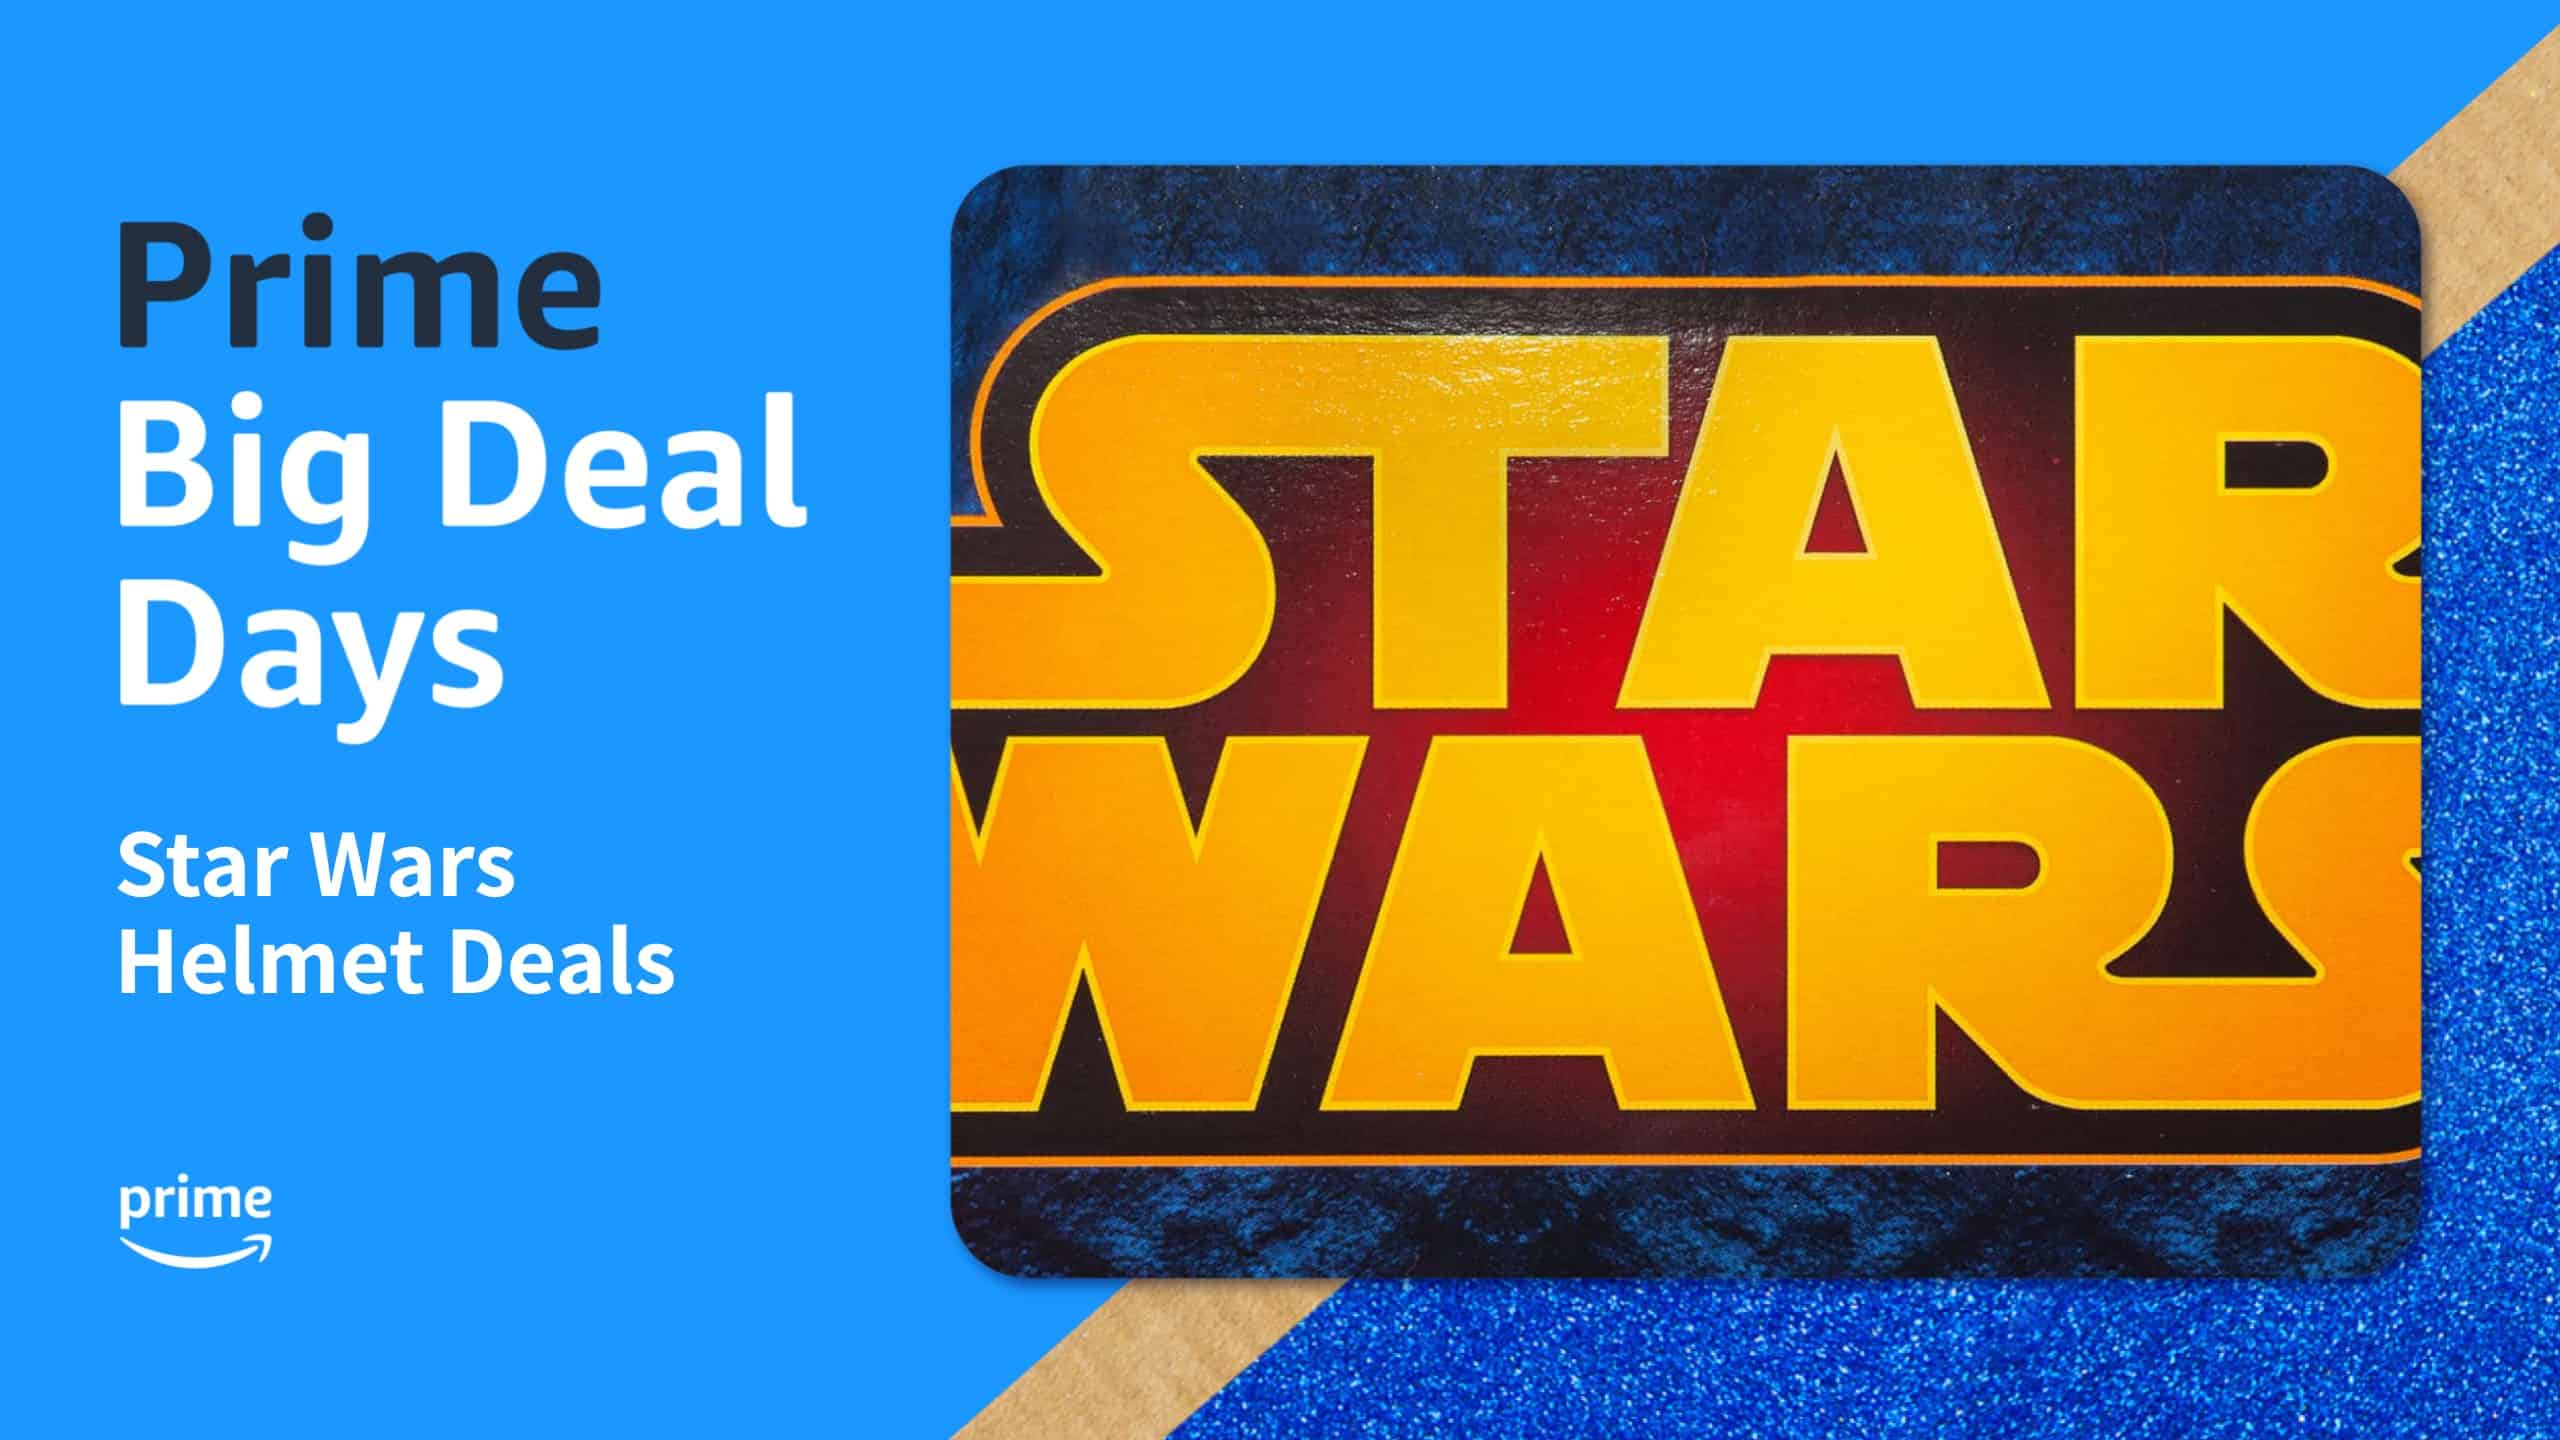 Star Wars Helmet Deals infographic